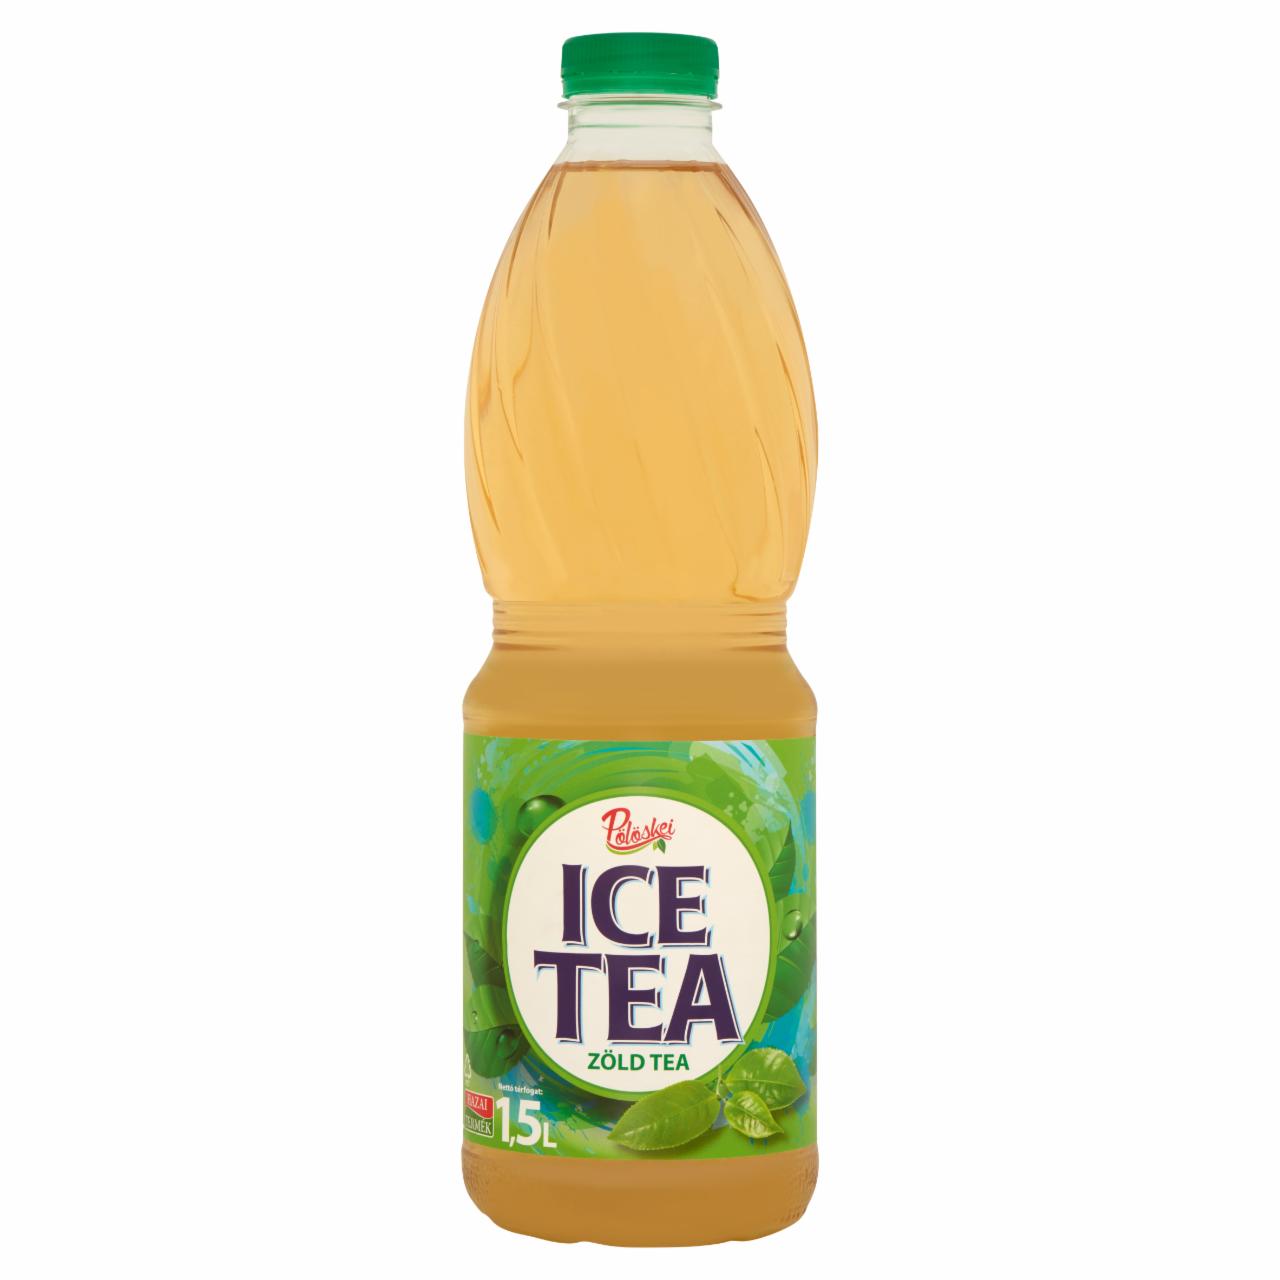 Képek - Pölöskei Ice Tea zöld tea cukorral és édesítőszerekkel 1,5 l